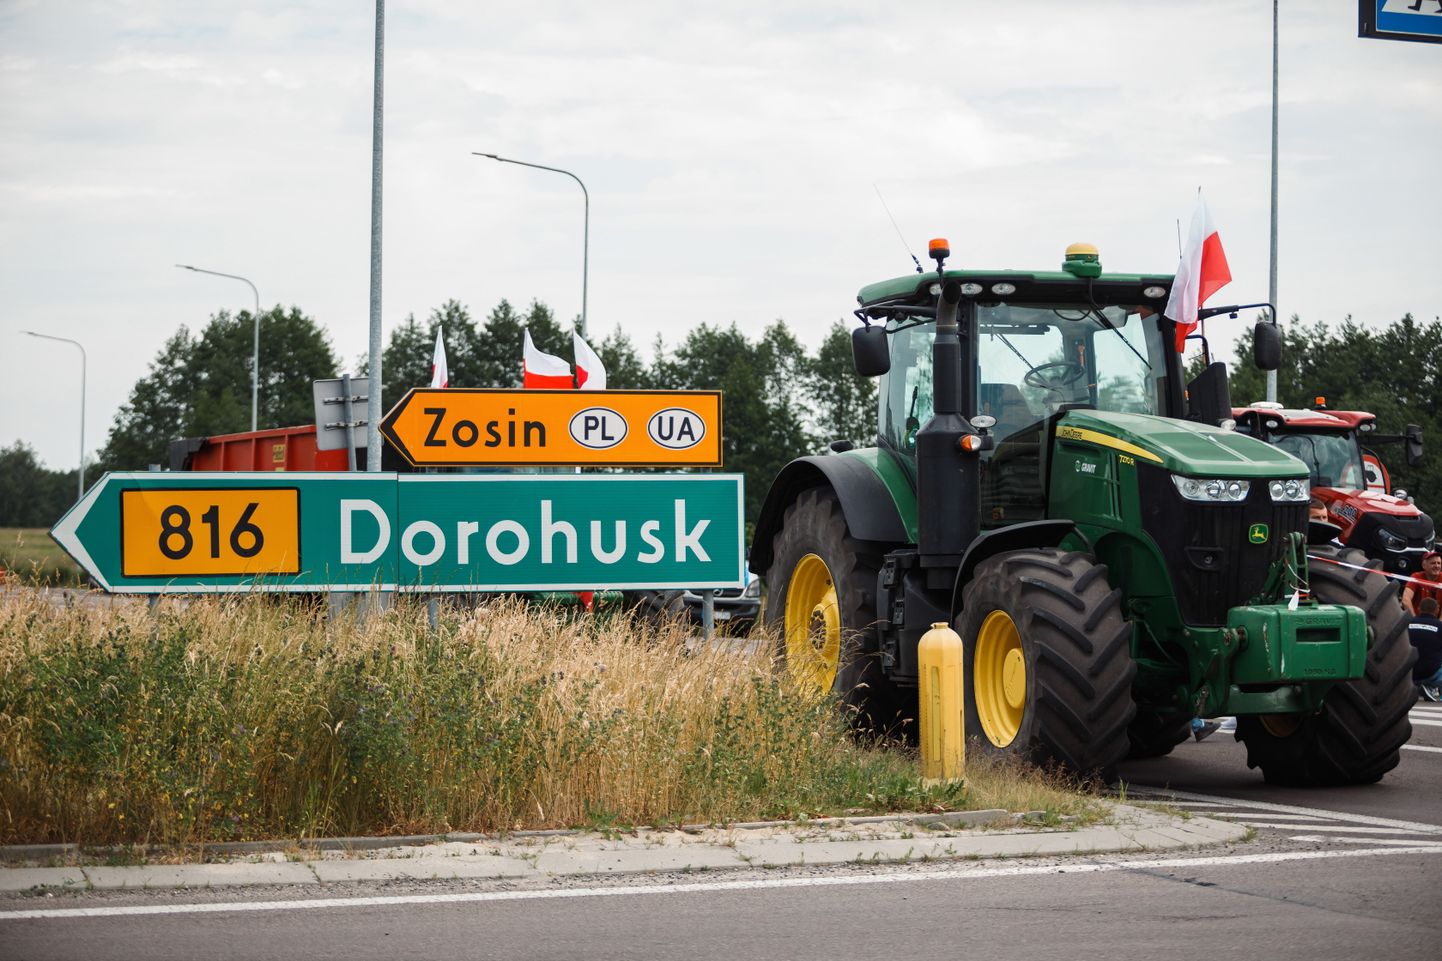 Poola põllumehed takistavad masinatega liiklust Poola ja Ukraina piiri lähedal Dorohuskis, et protestida Poola turule jõudva odavama Ukraina vilja vastu, 9. juunil 2023